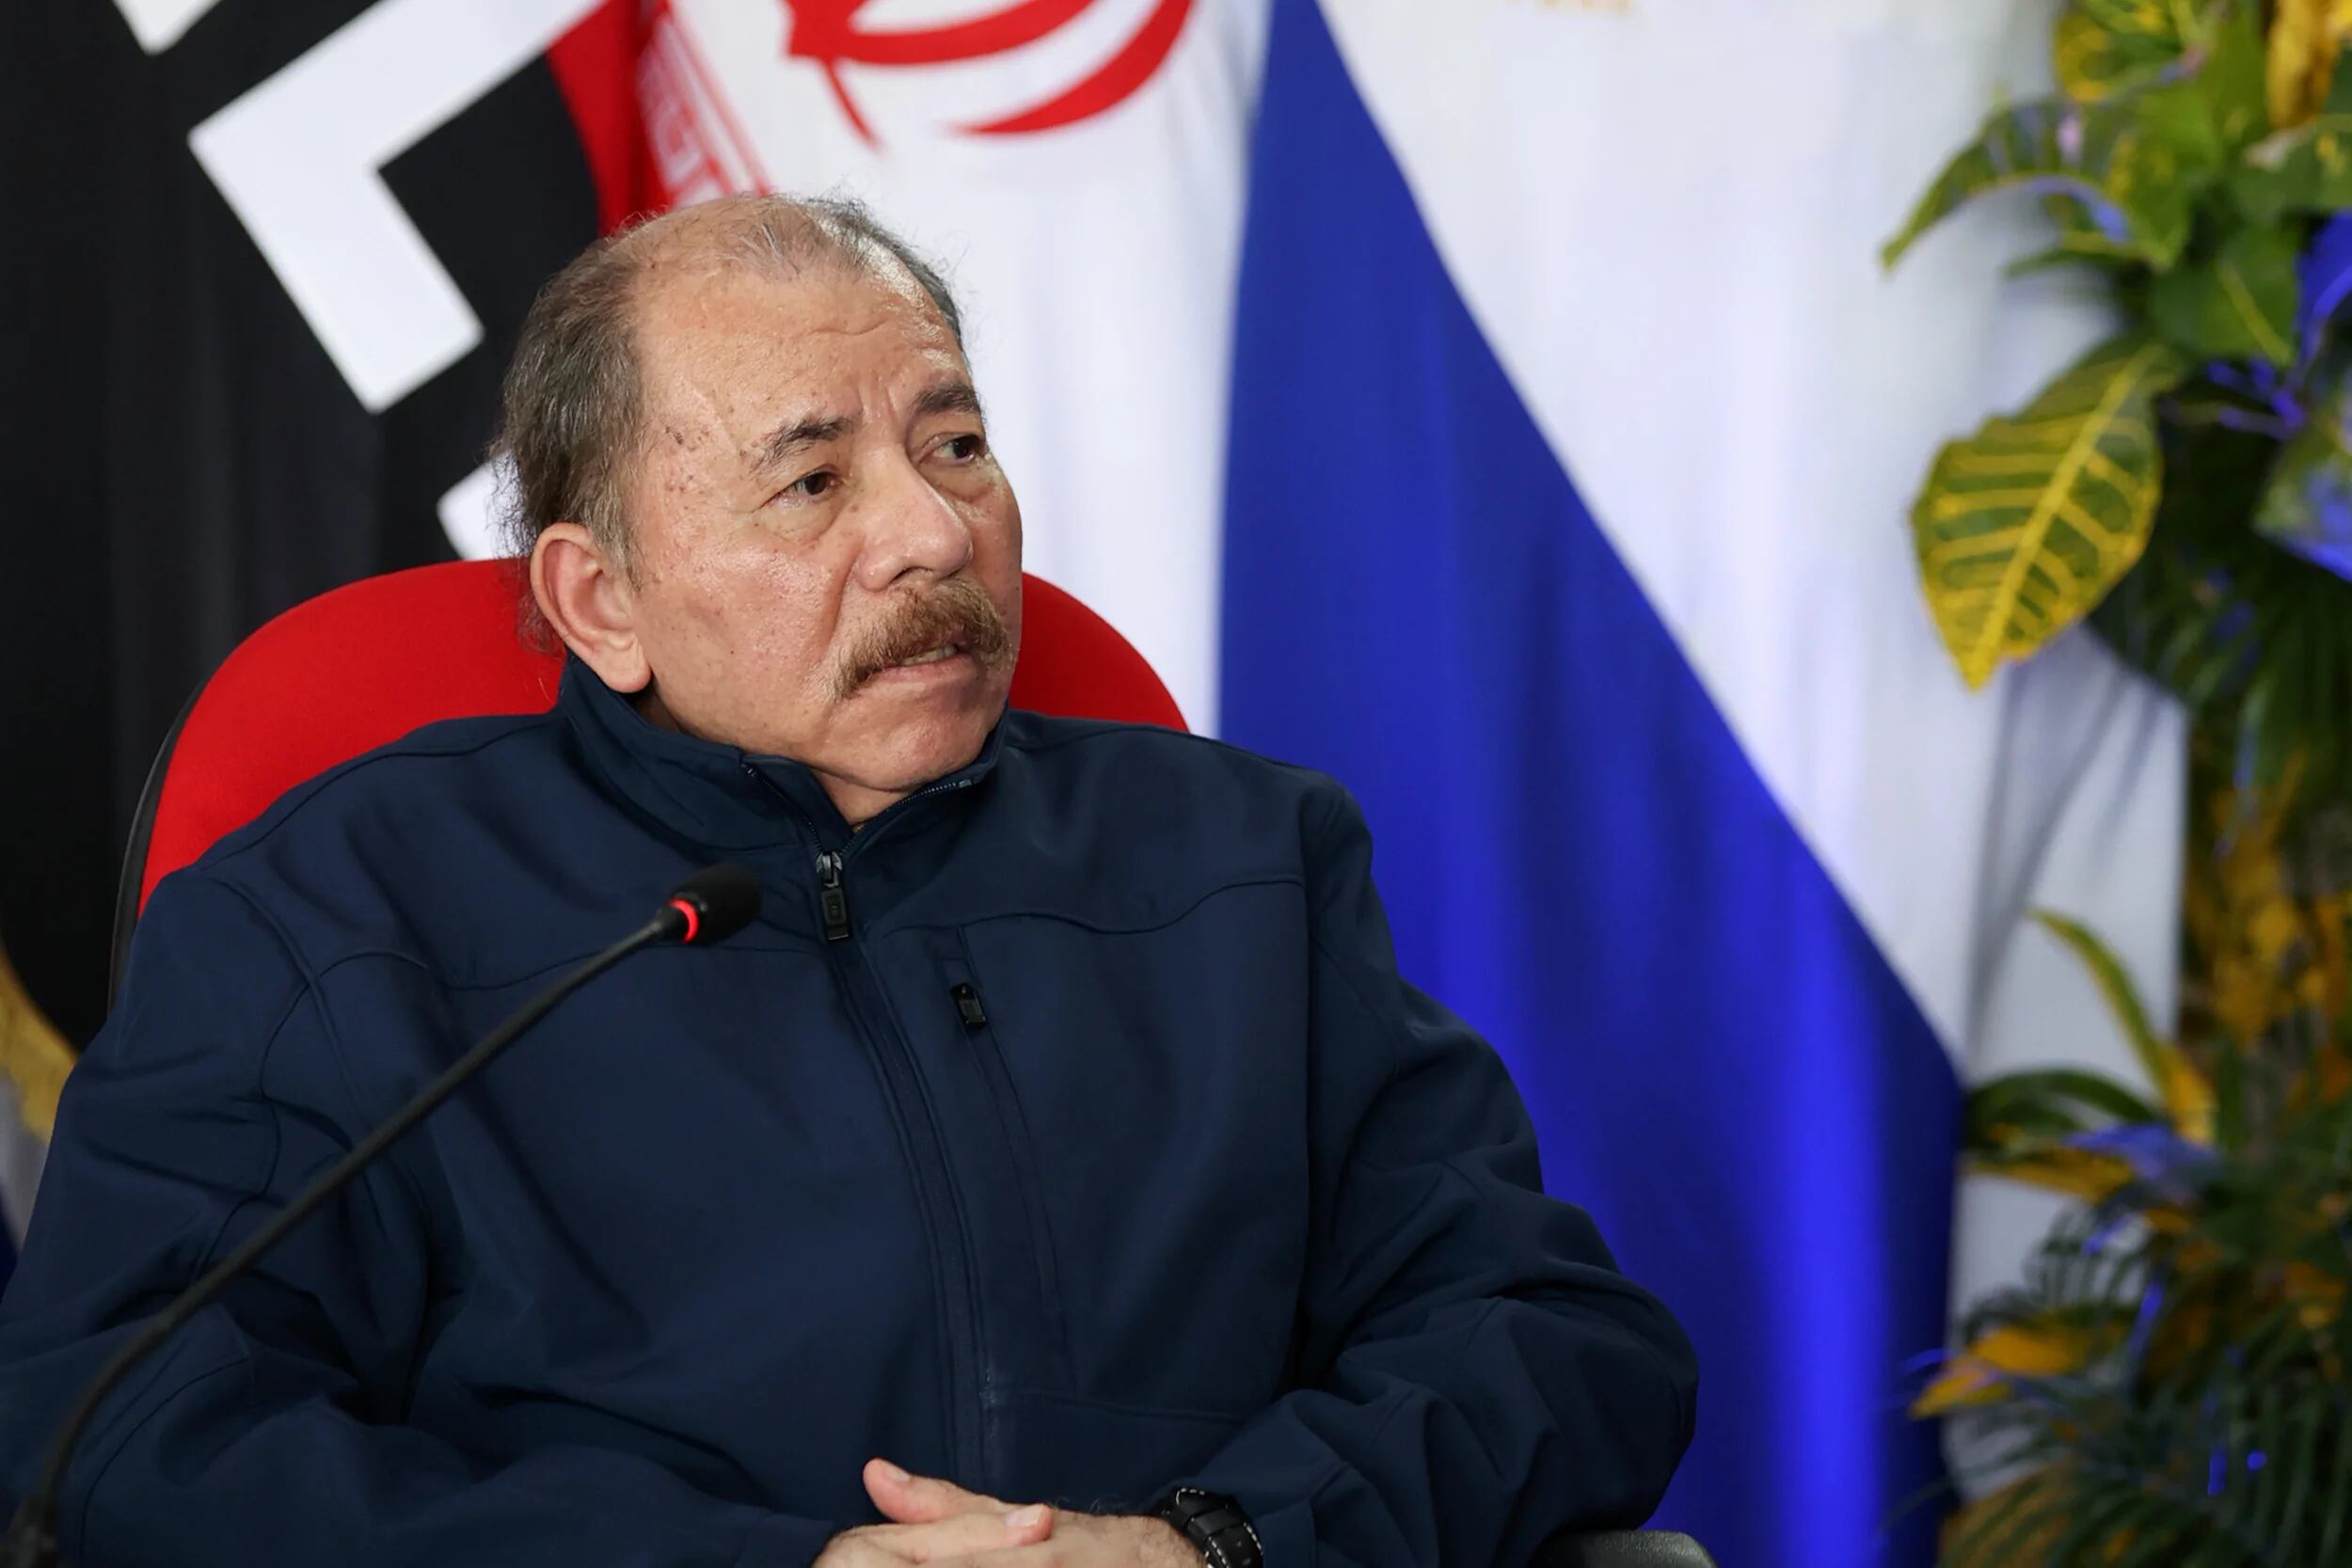 Daniel Ortega llamó “traidor” a Gustavo Petro y tildó a Gabriel Boric de ser un “pinochetito”: ¿qué pasó?